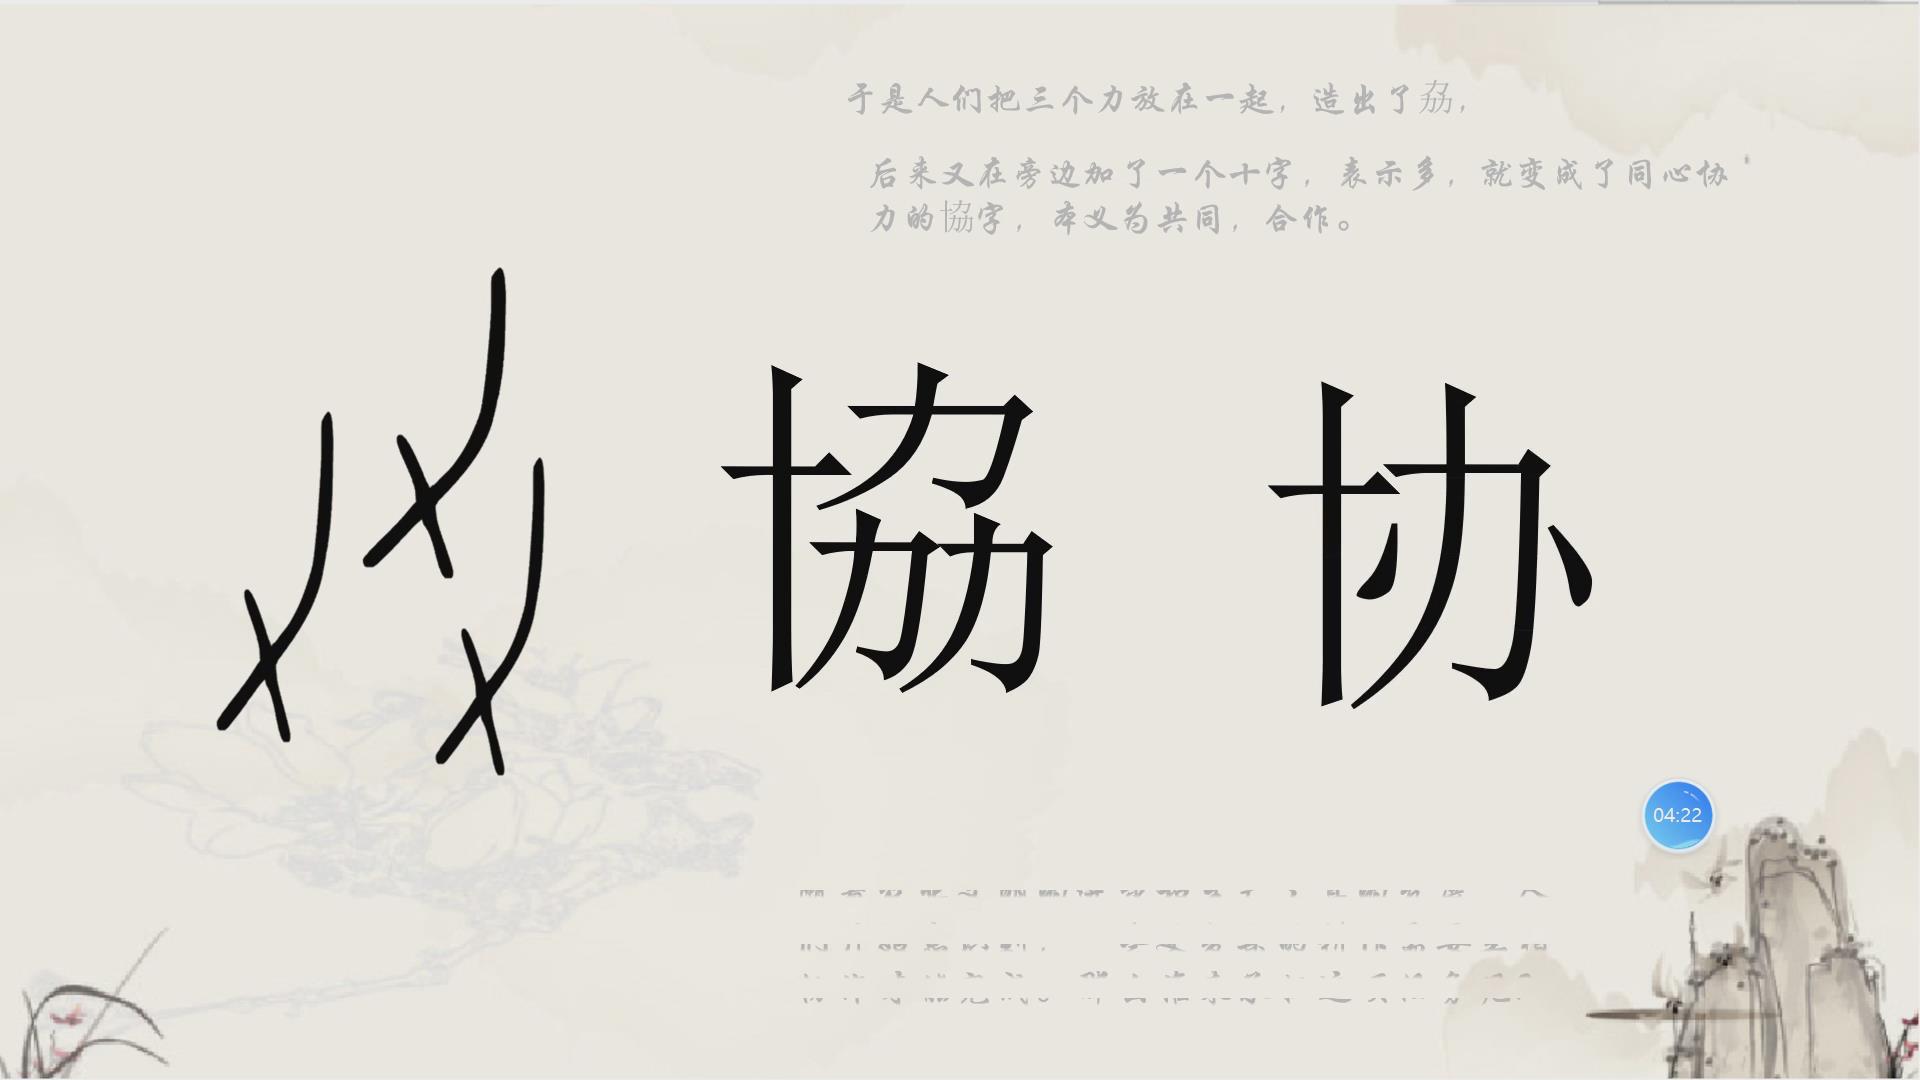 数字艺术竞赛作品——汉字文化传承视域下的四季农活微电影设计与制作